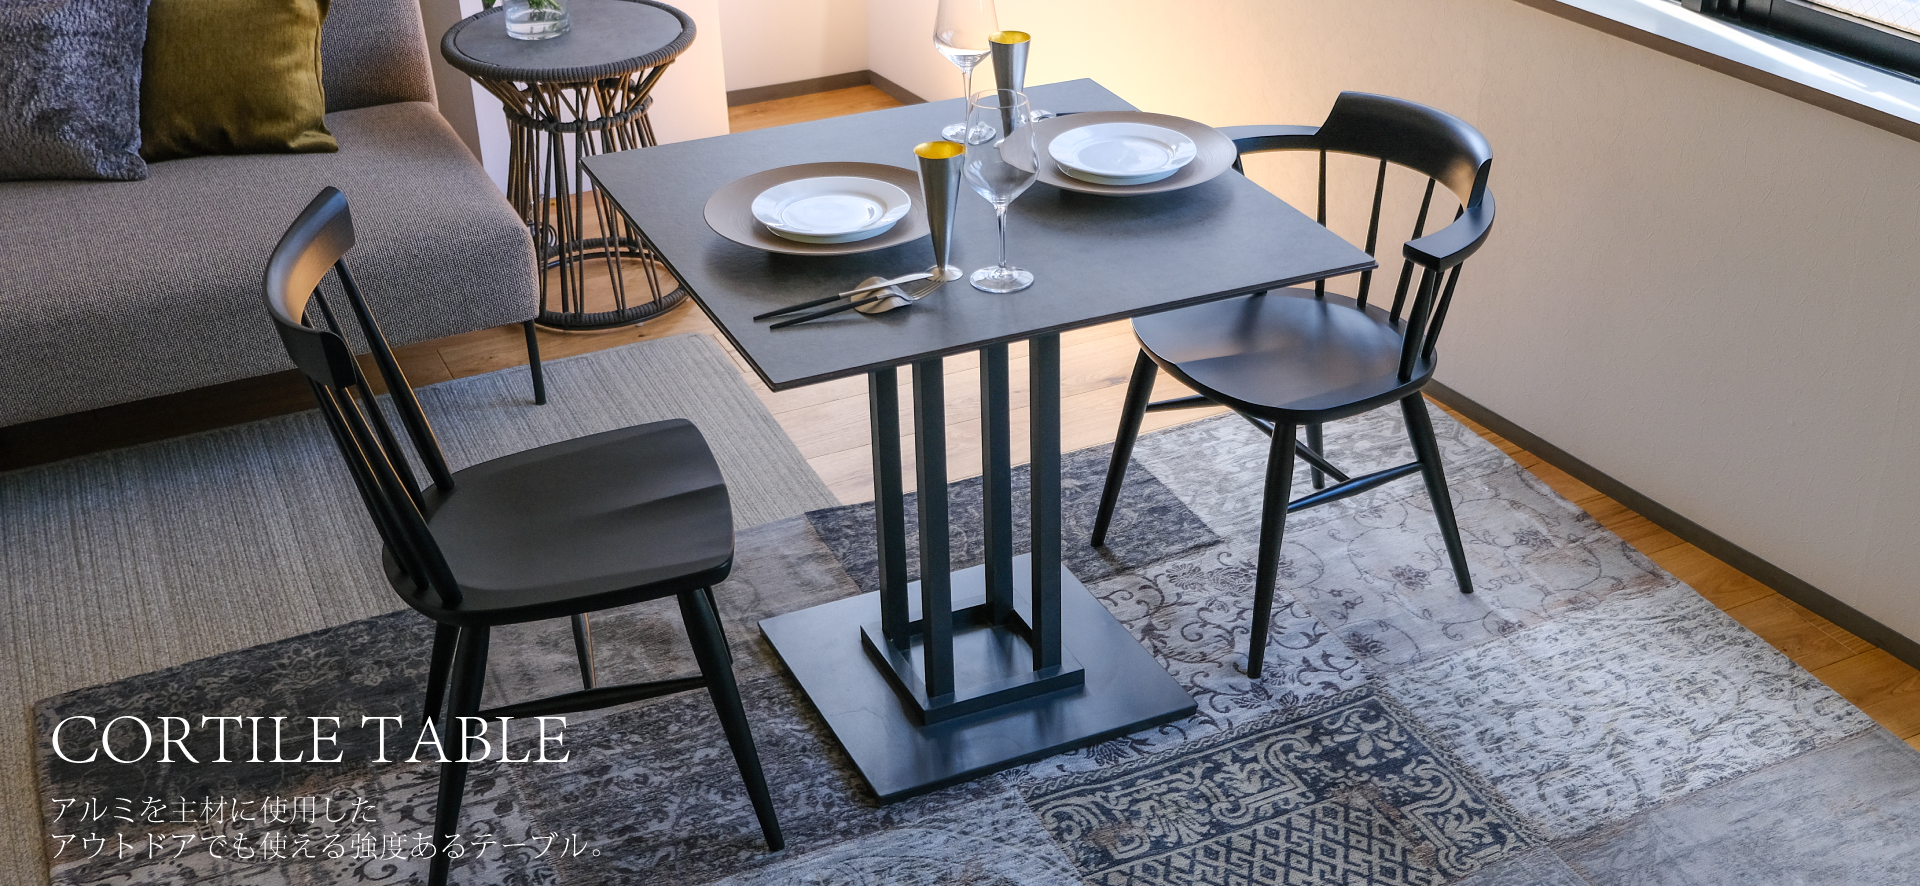 CORTILE TABLE(コルティーレテーブル)アルミを主材に使用したアウトドアでも使える強度あるテーブル。